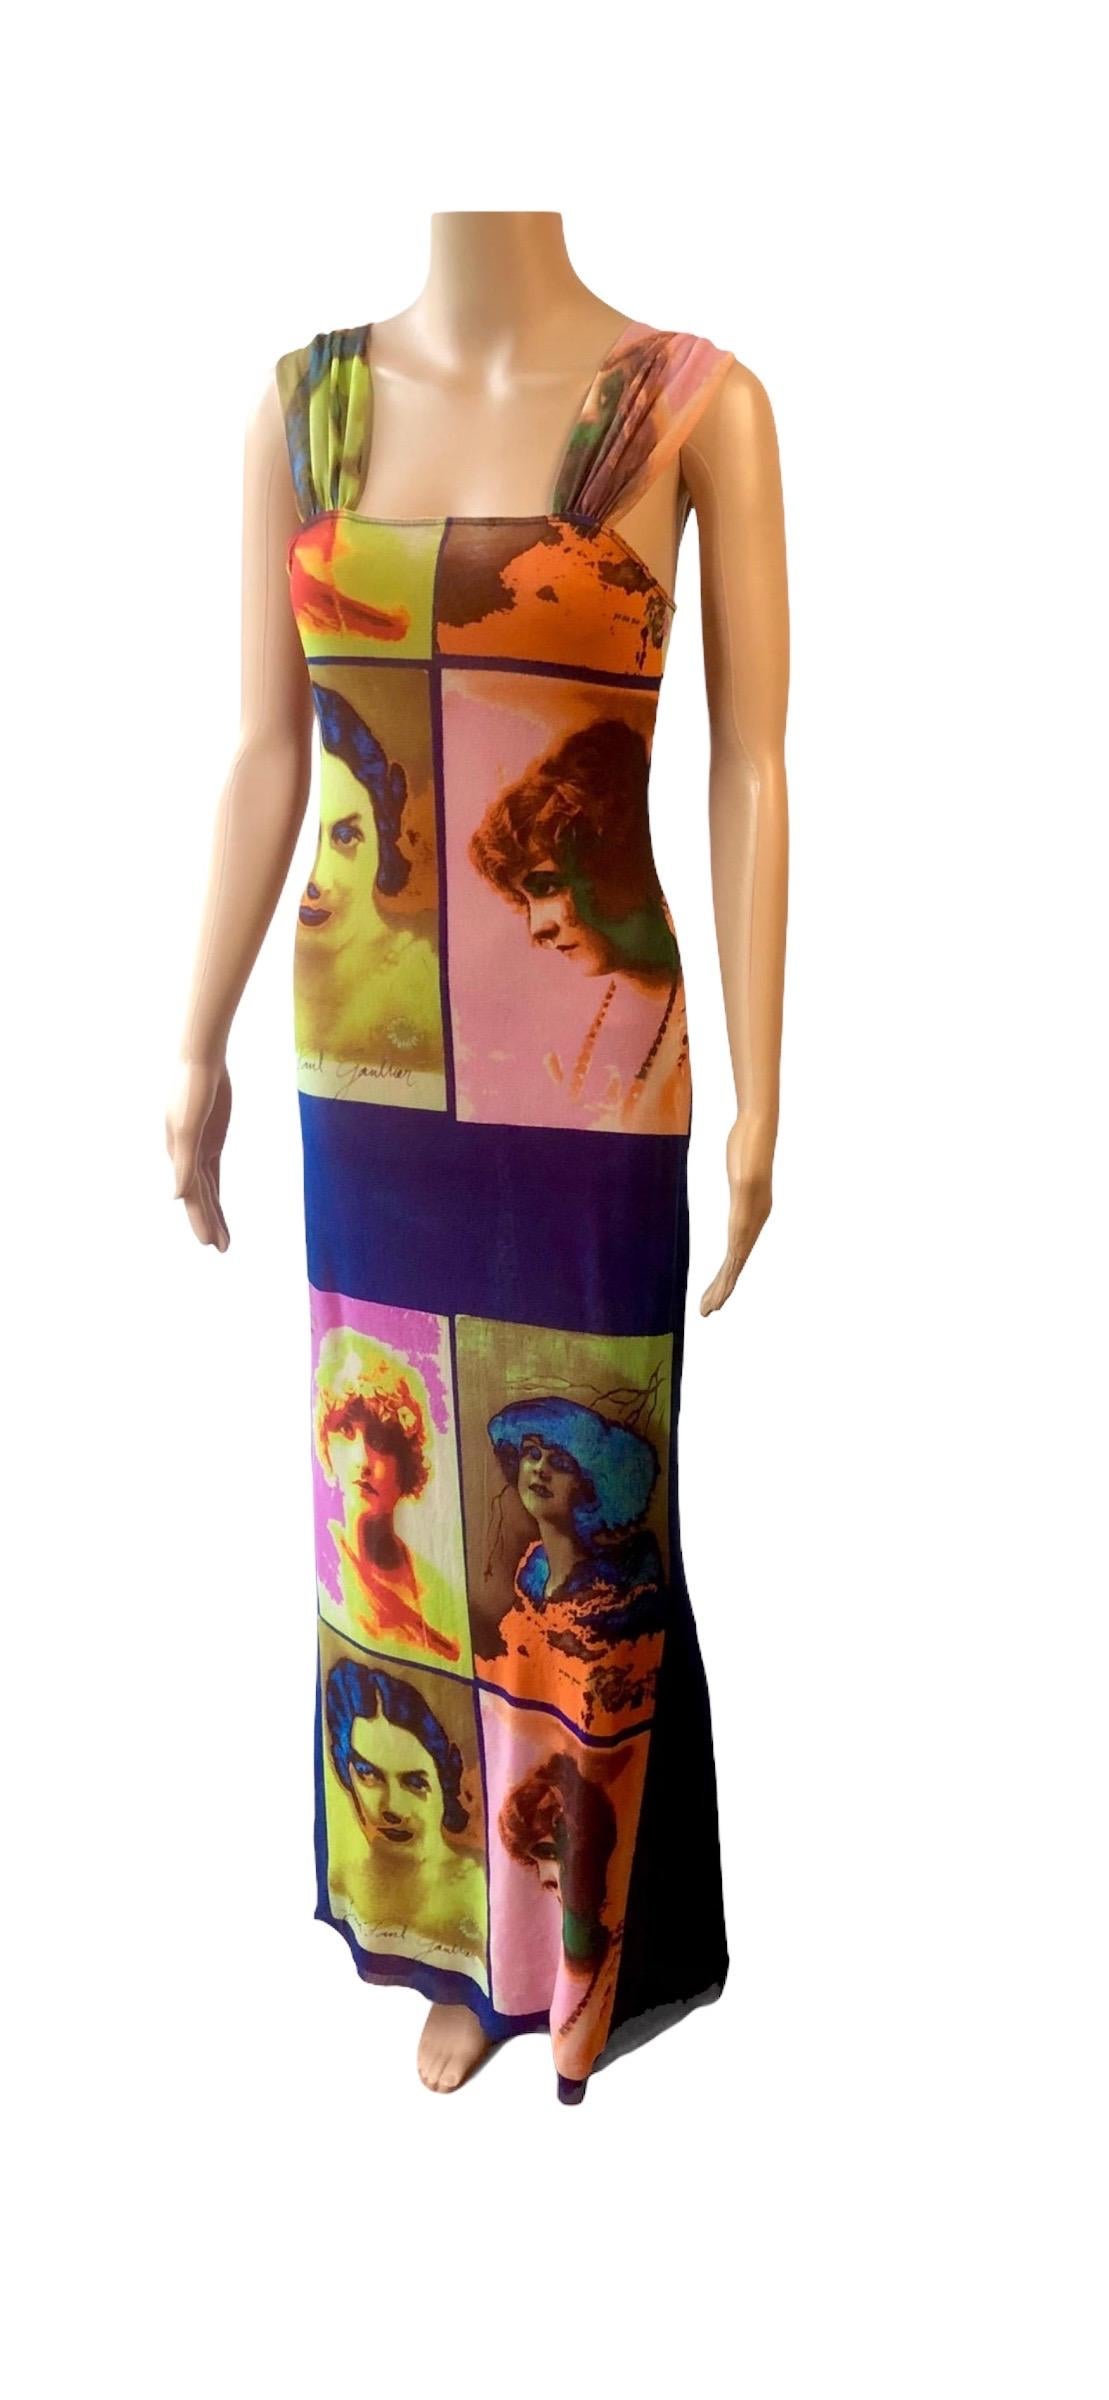 Jean Paul Gaultier Soleil S/S 2002 Vintage “Portraits” Mesh Maxi Dress  For Sale 4